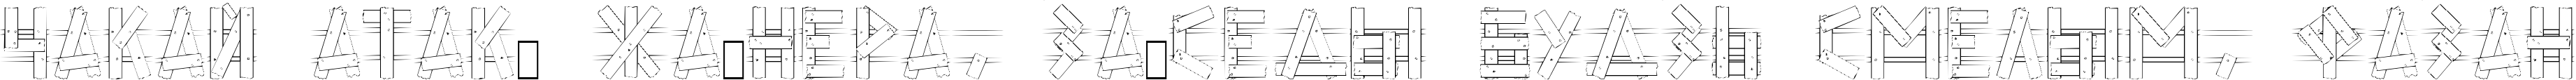 Пример написания шрифтом LC Fence текста на белорусском